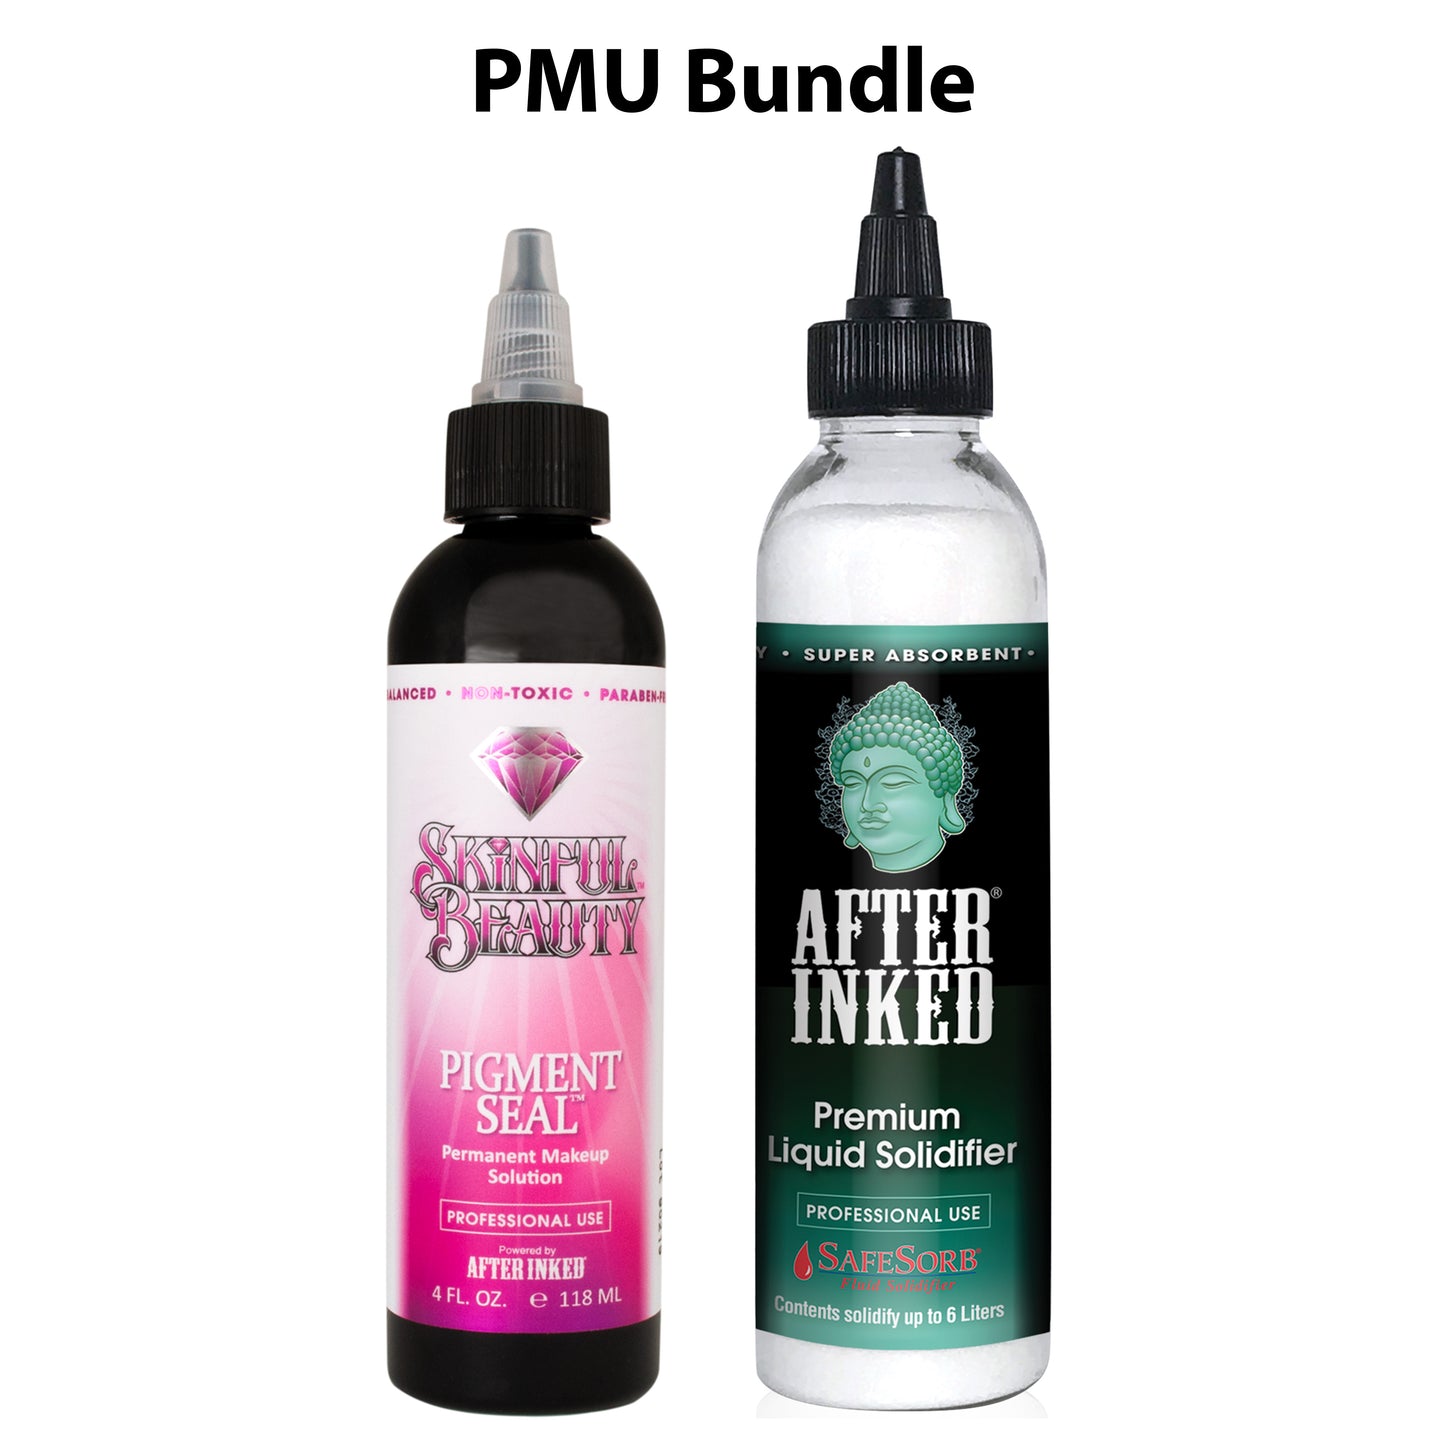 PMU Bundle: Pigment Seal permanent makeup solution for professional use, 4oz bottle, plus  SafeSorb Premium liquid solidifier for professional use. 